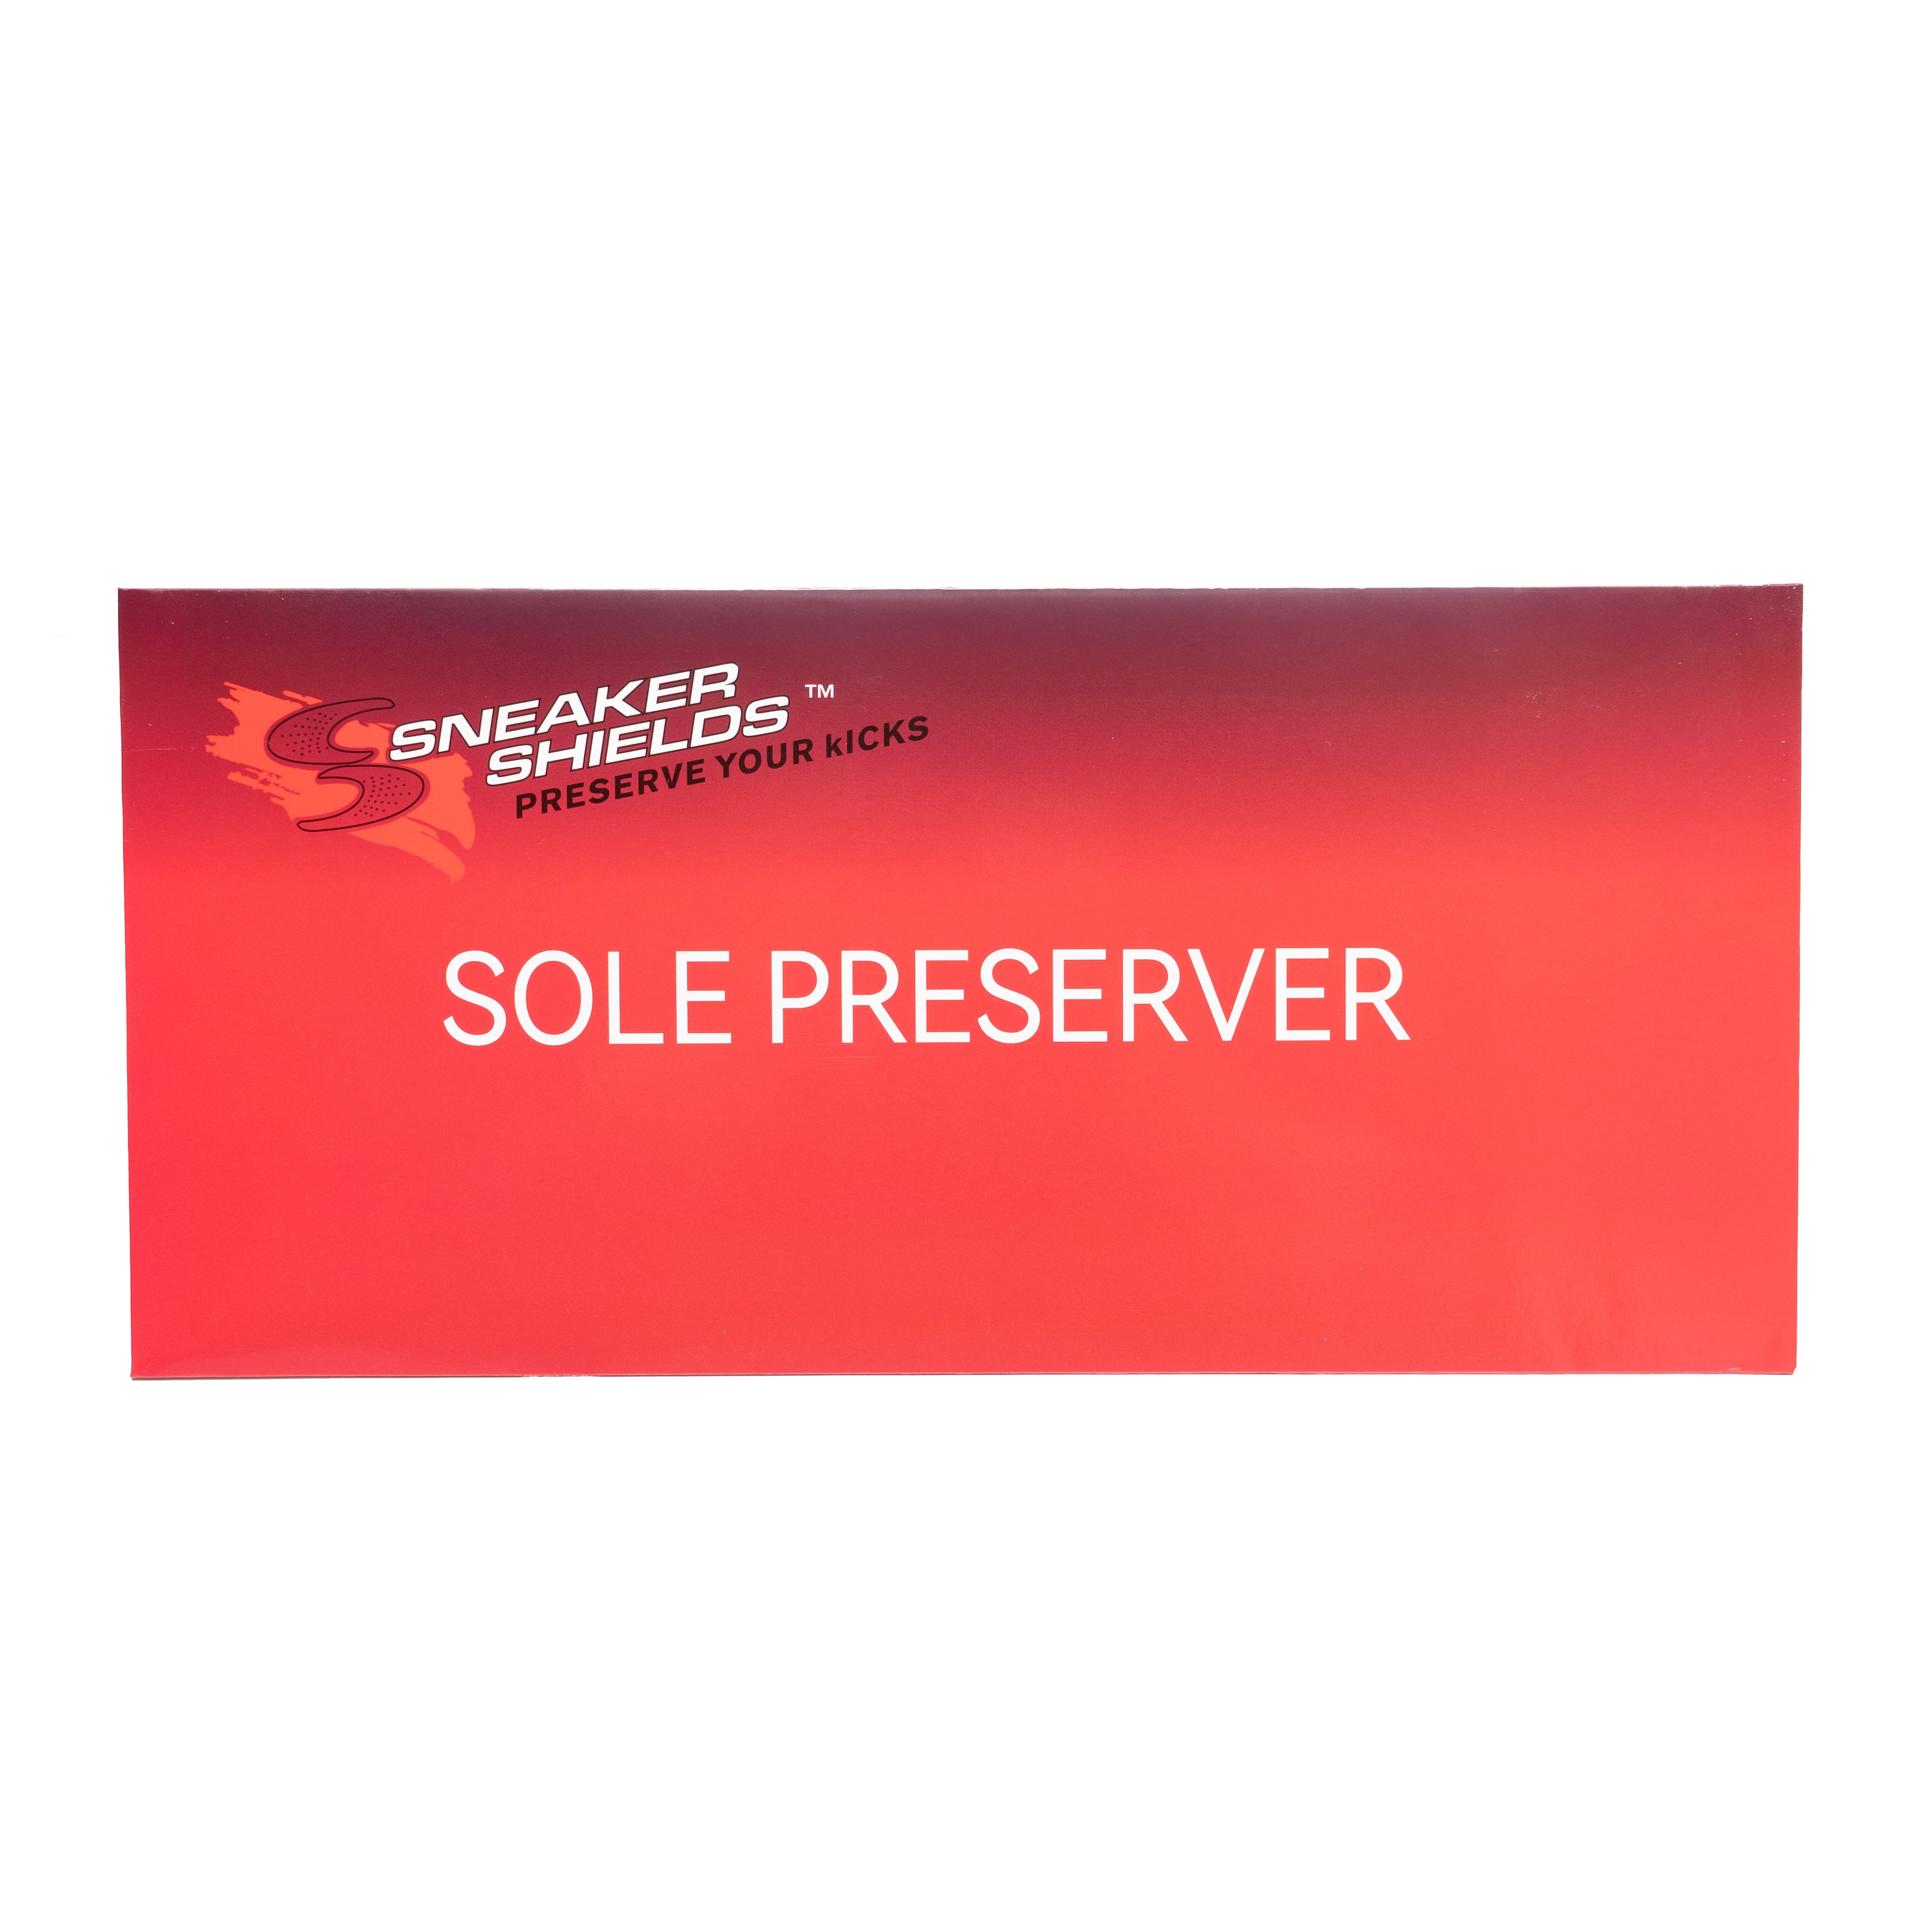 THE SOLE PRESERVER